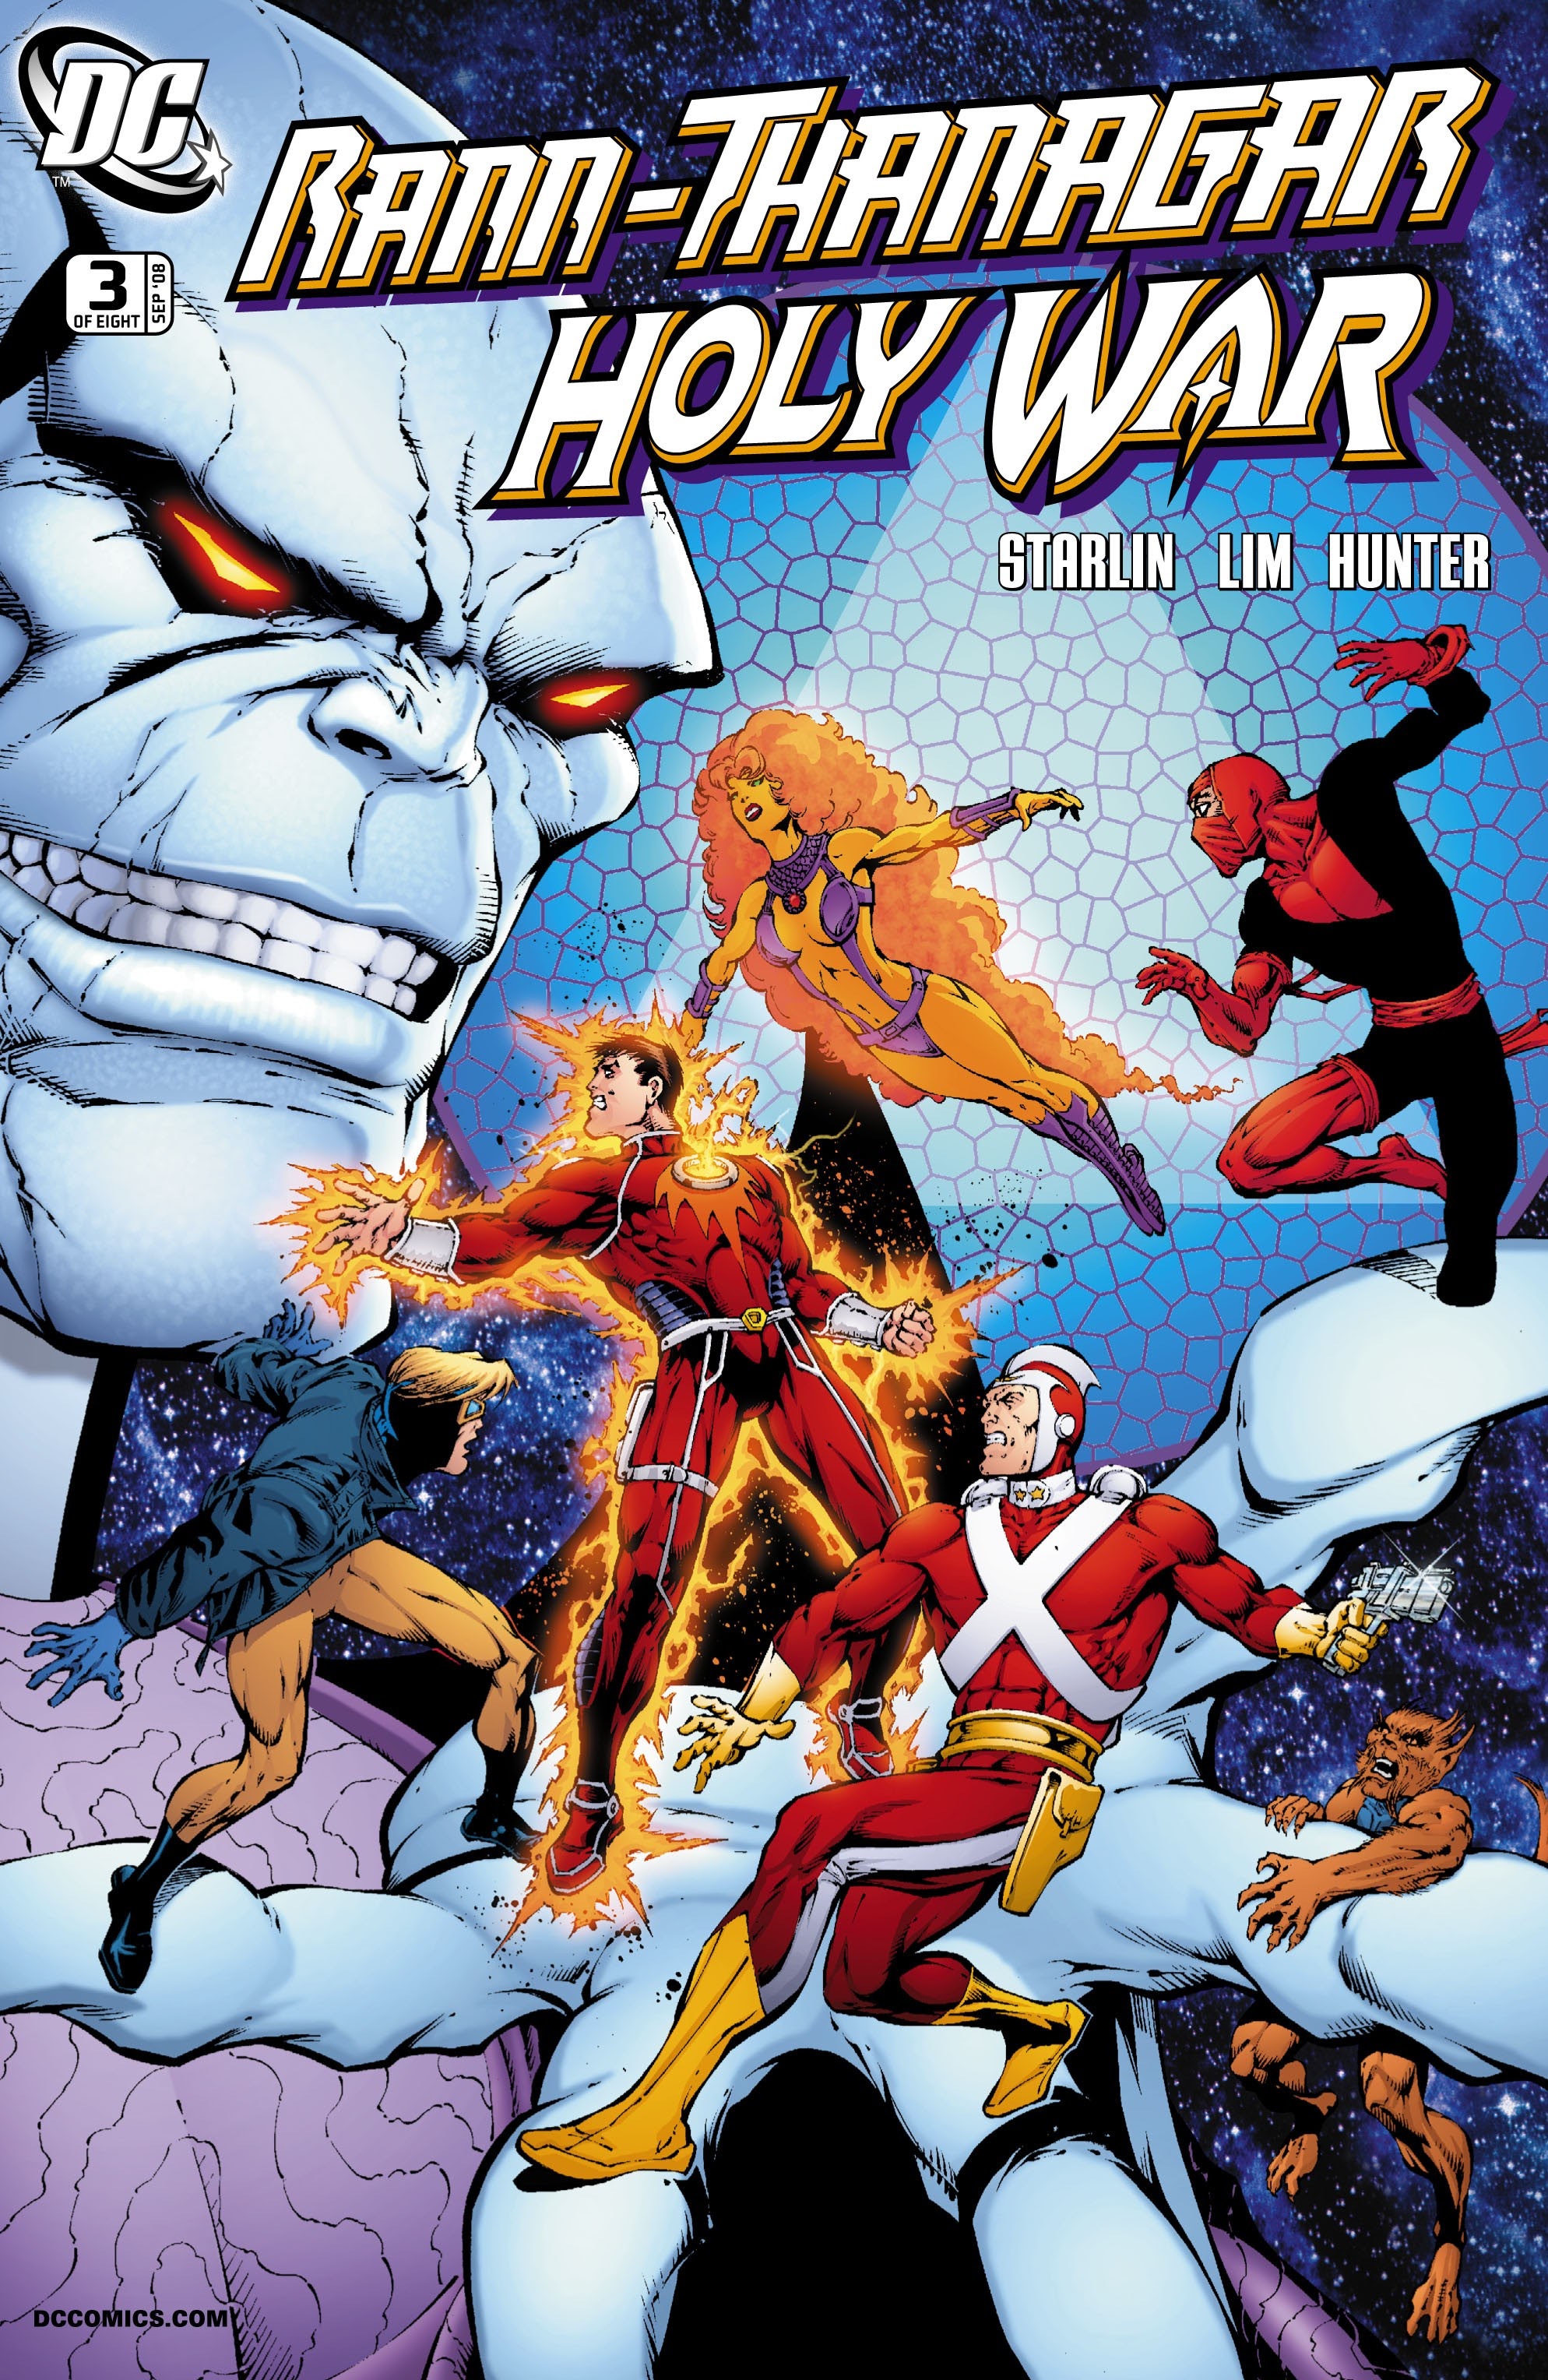 Read online Rann/Thanagar Holy War comic -  Issue #3 - 1